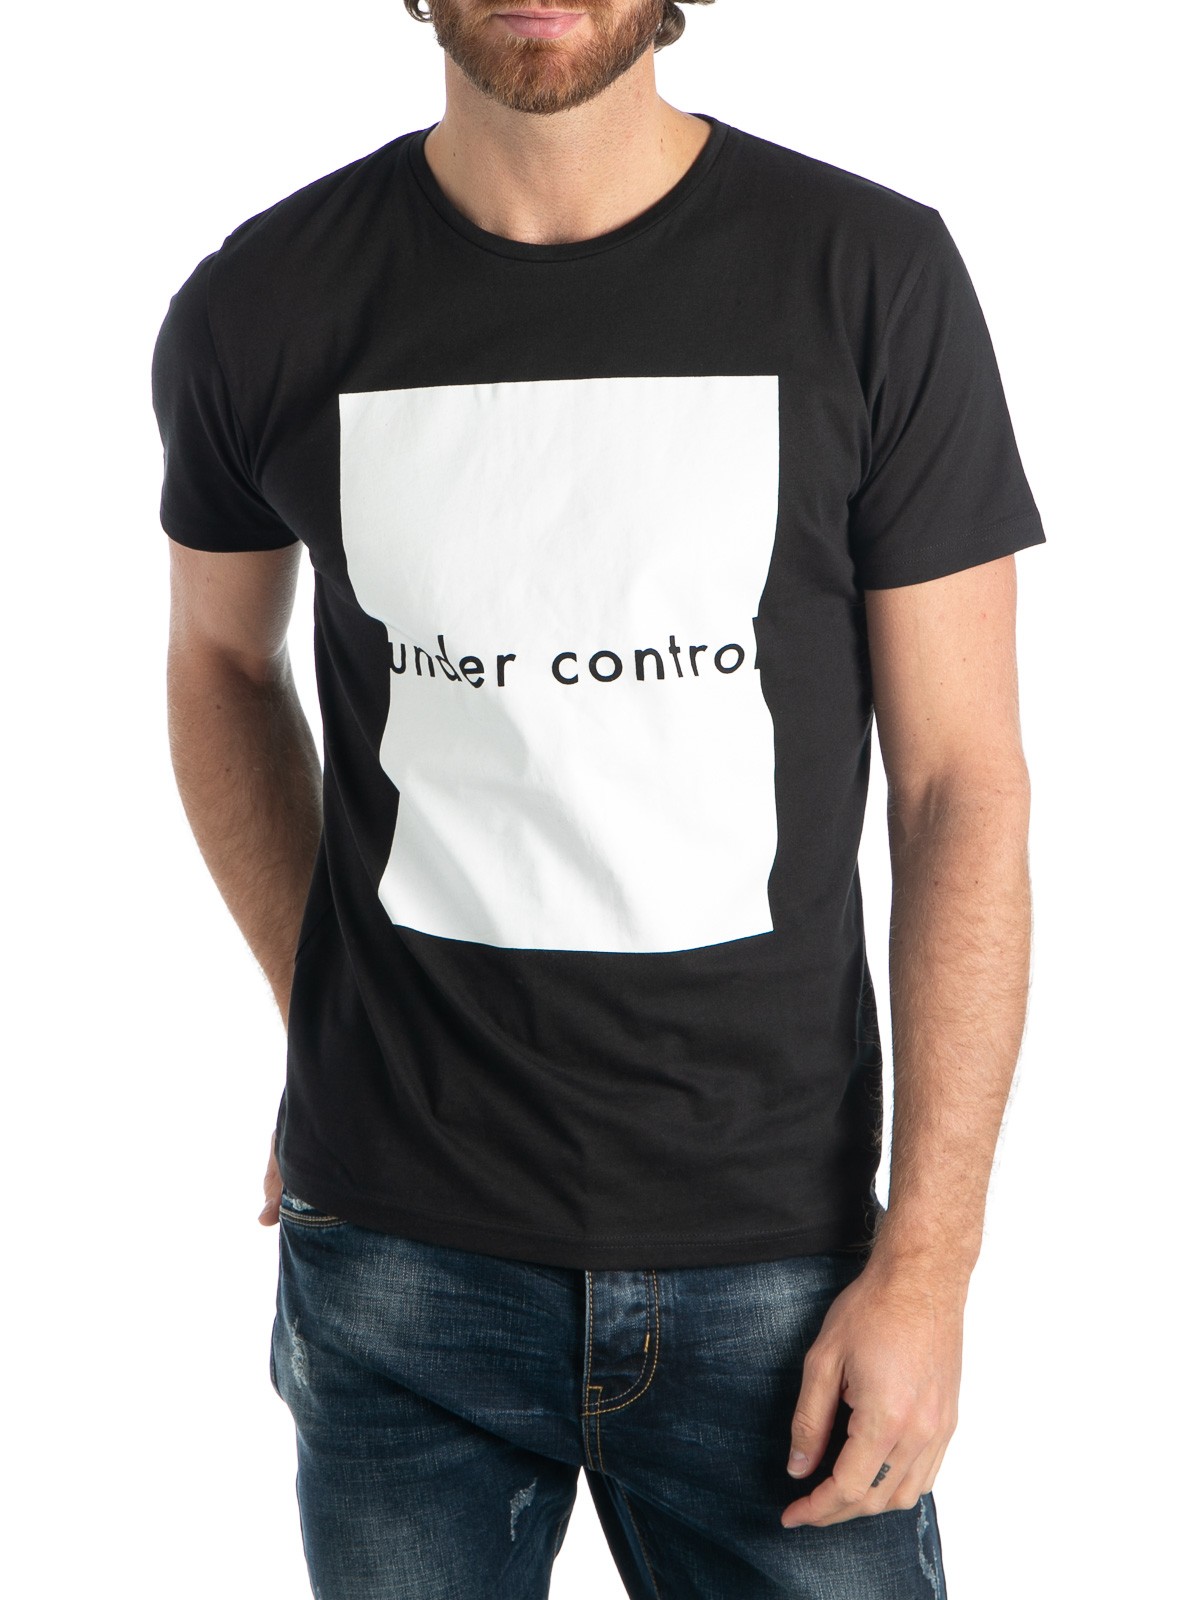 T-shirt uni noir homme - DistriCenter